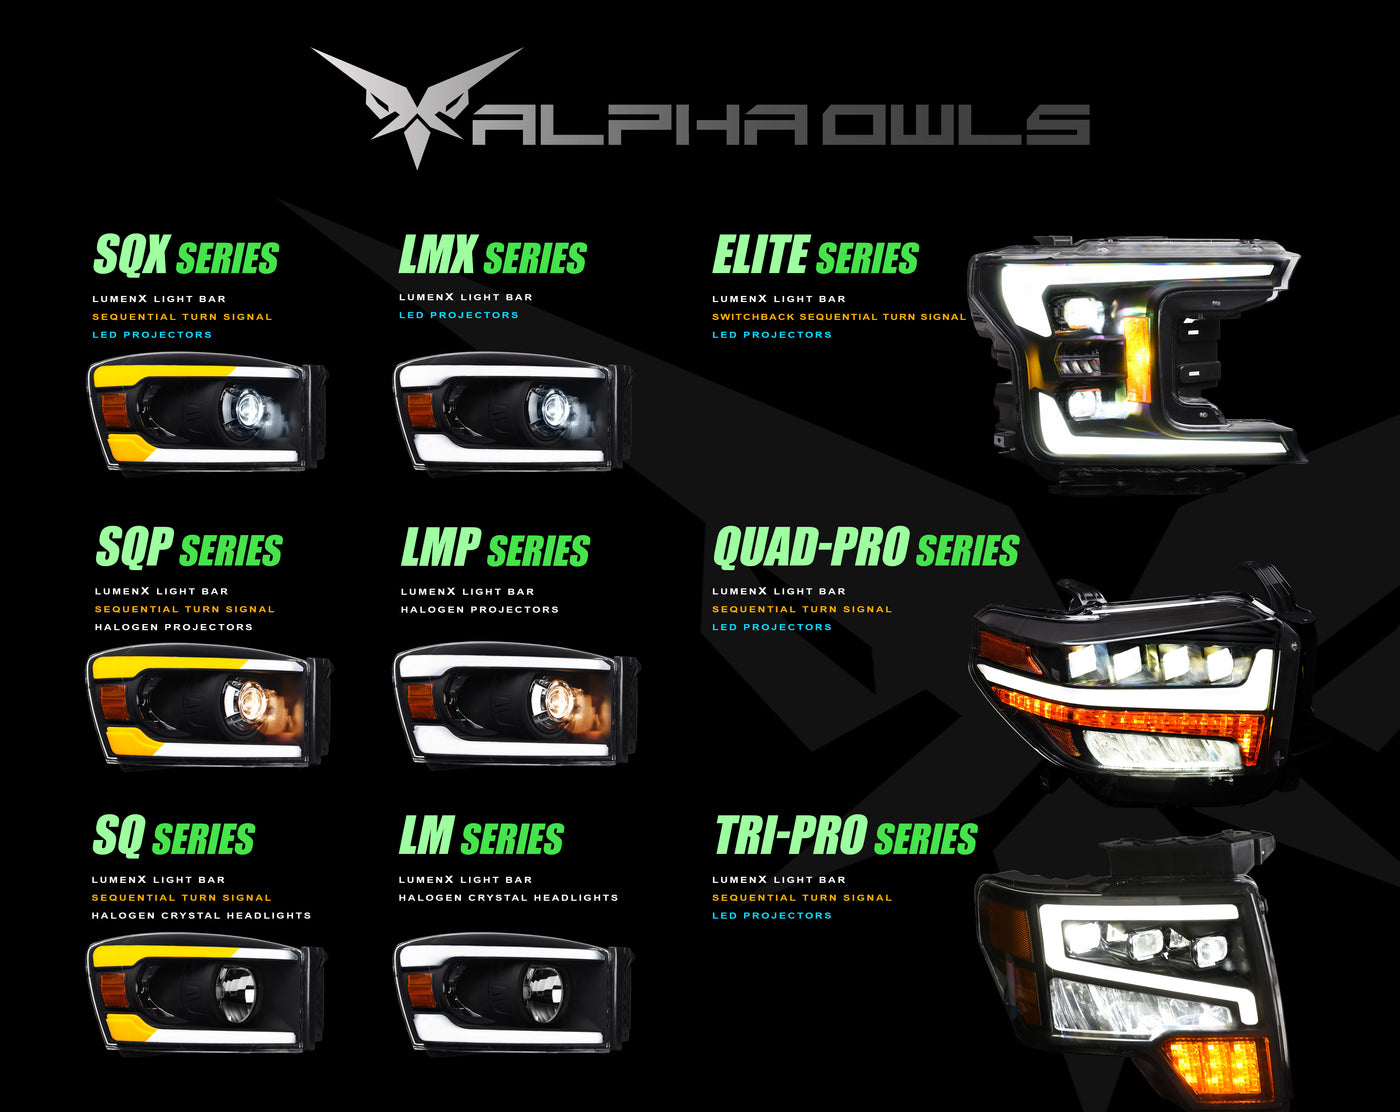 Alpha Owls Headlights, Alpha Owls GMC Headlights, GMC 2007-2014 Headlights, GMC Sierra 2500/3500 Headlights, LED Projector Headlights, GMC Sierra Headlights